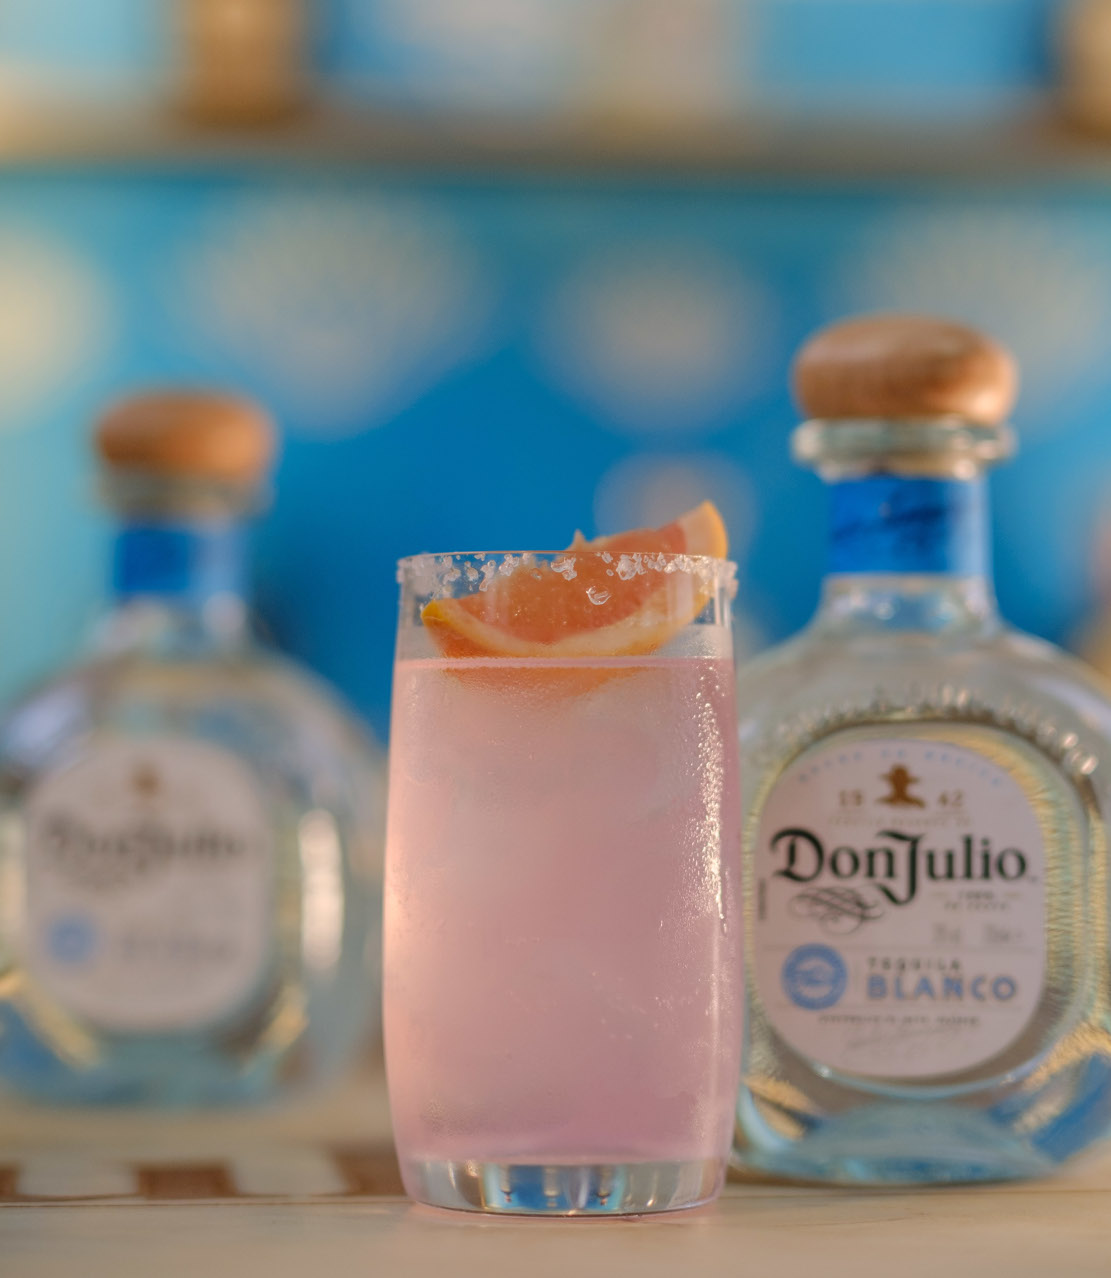 Η μέρα επιβάλει cocktail και αν έχεις Don Julio tequila μπορείς να φτιάξεις την iconic Paloma